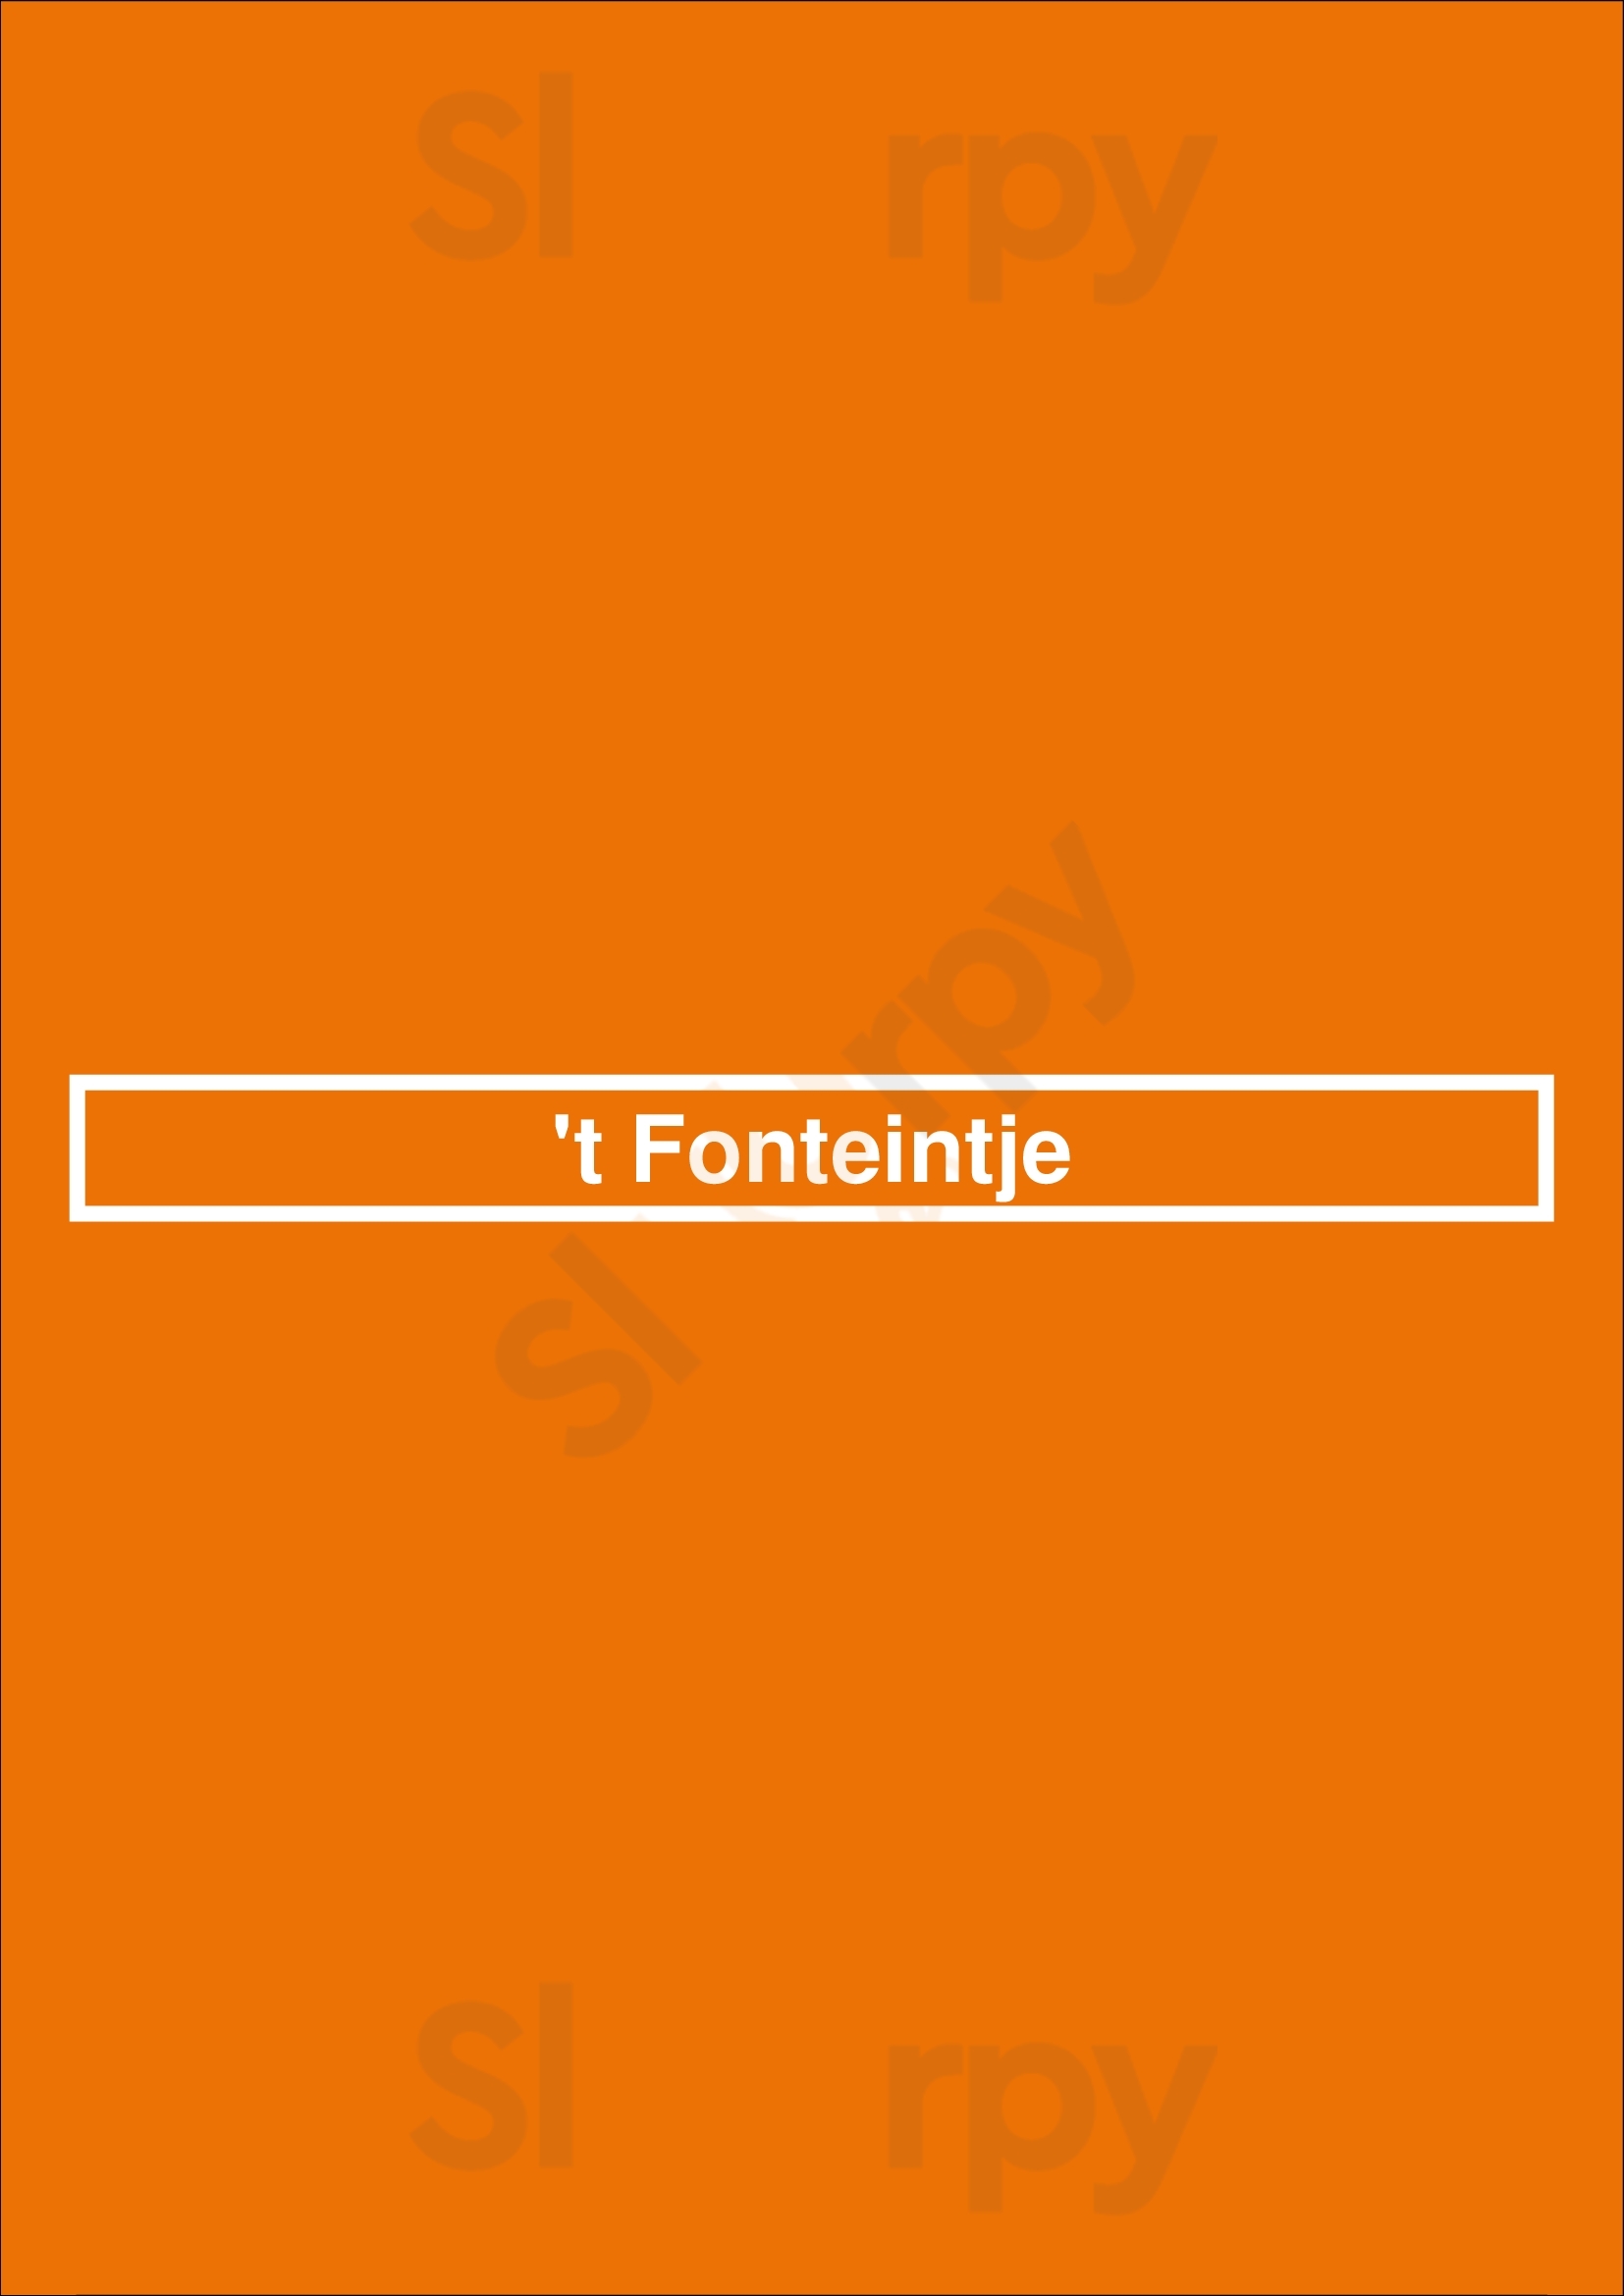 't Fonteintje Bruges Menu - 1